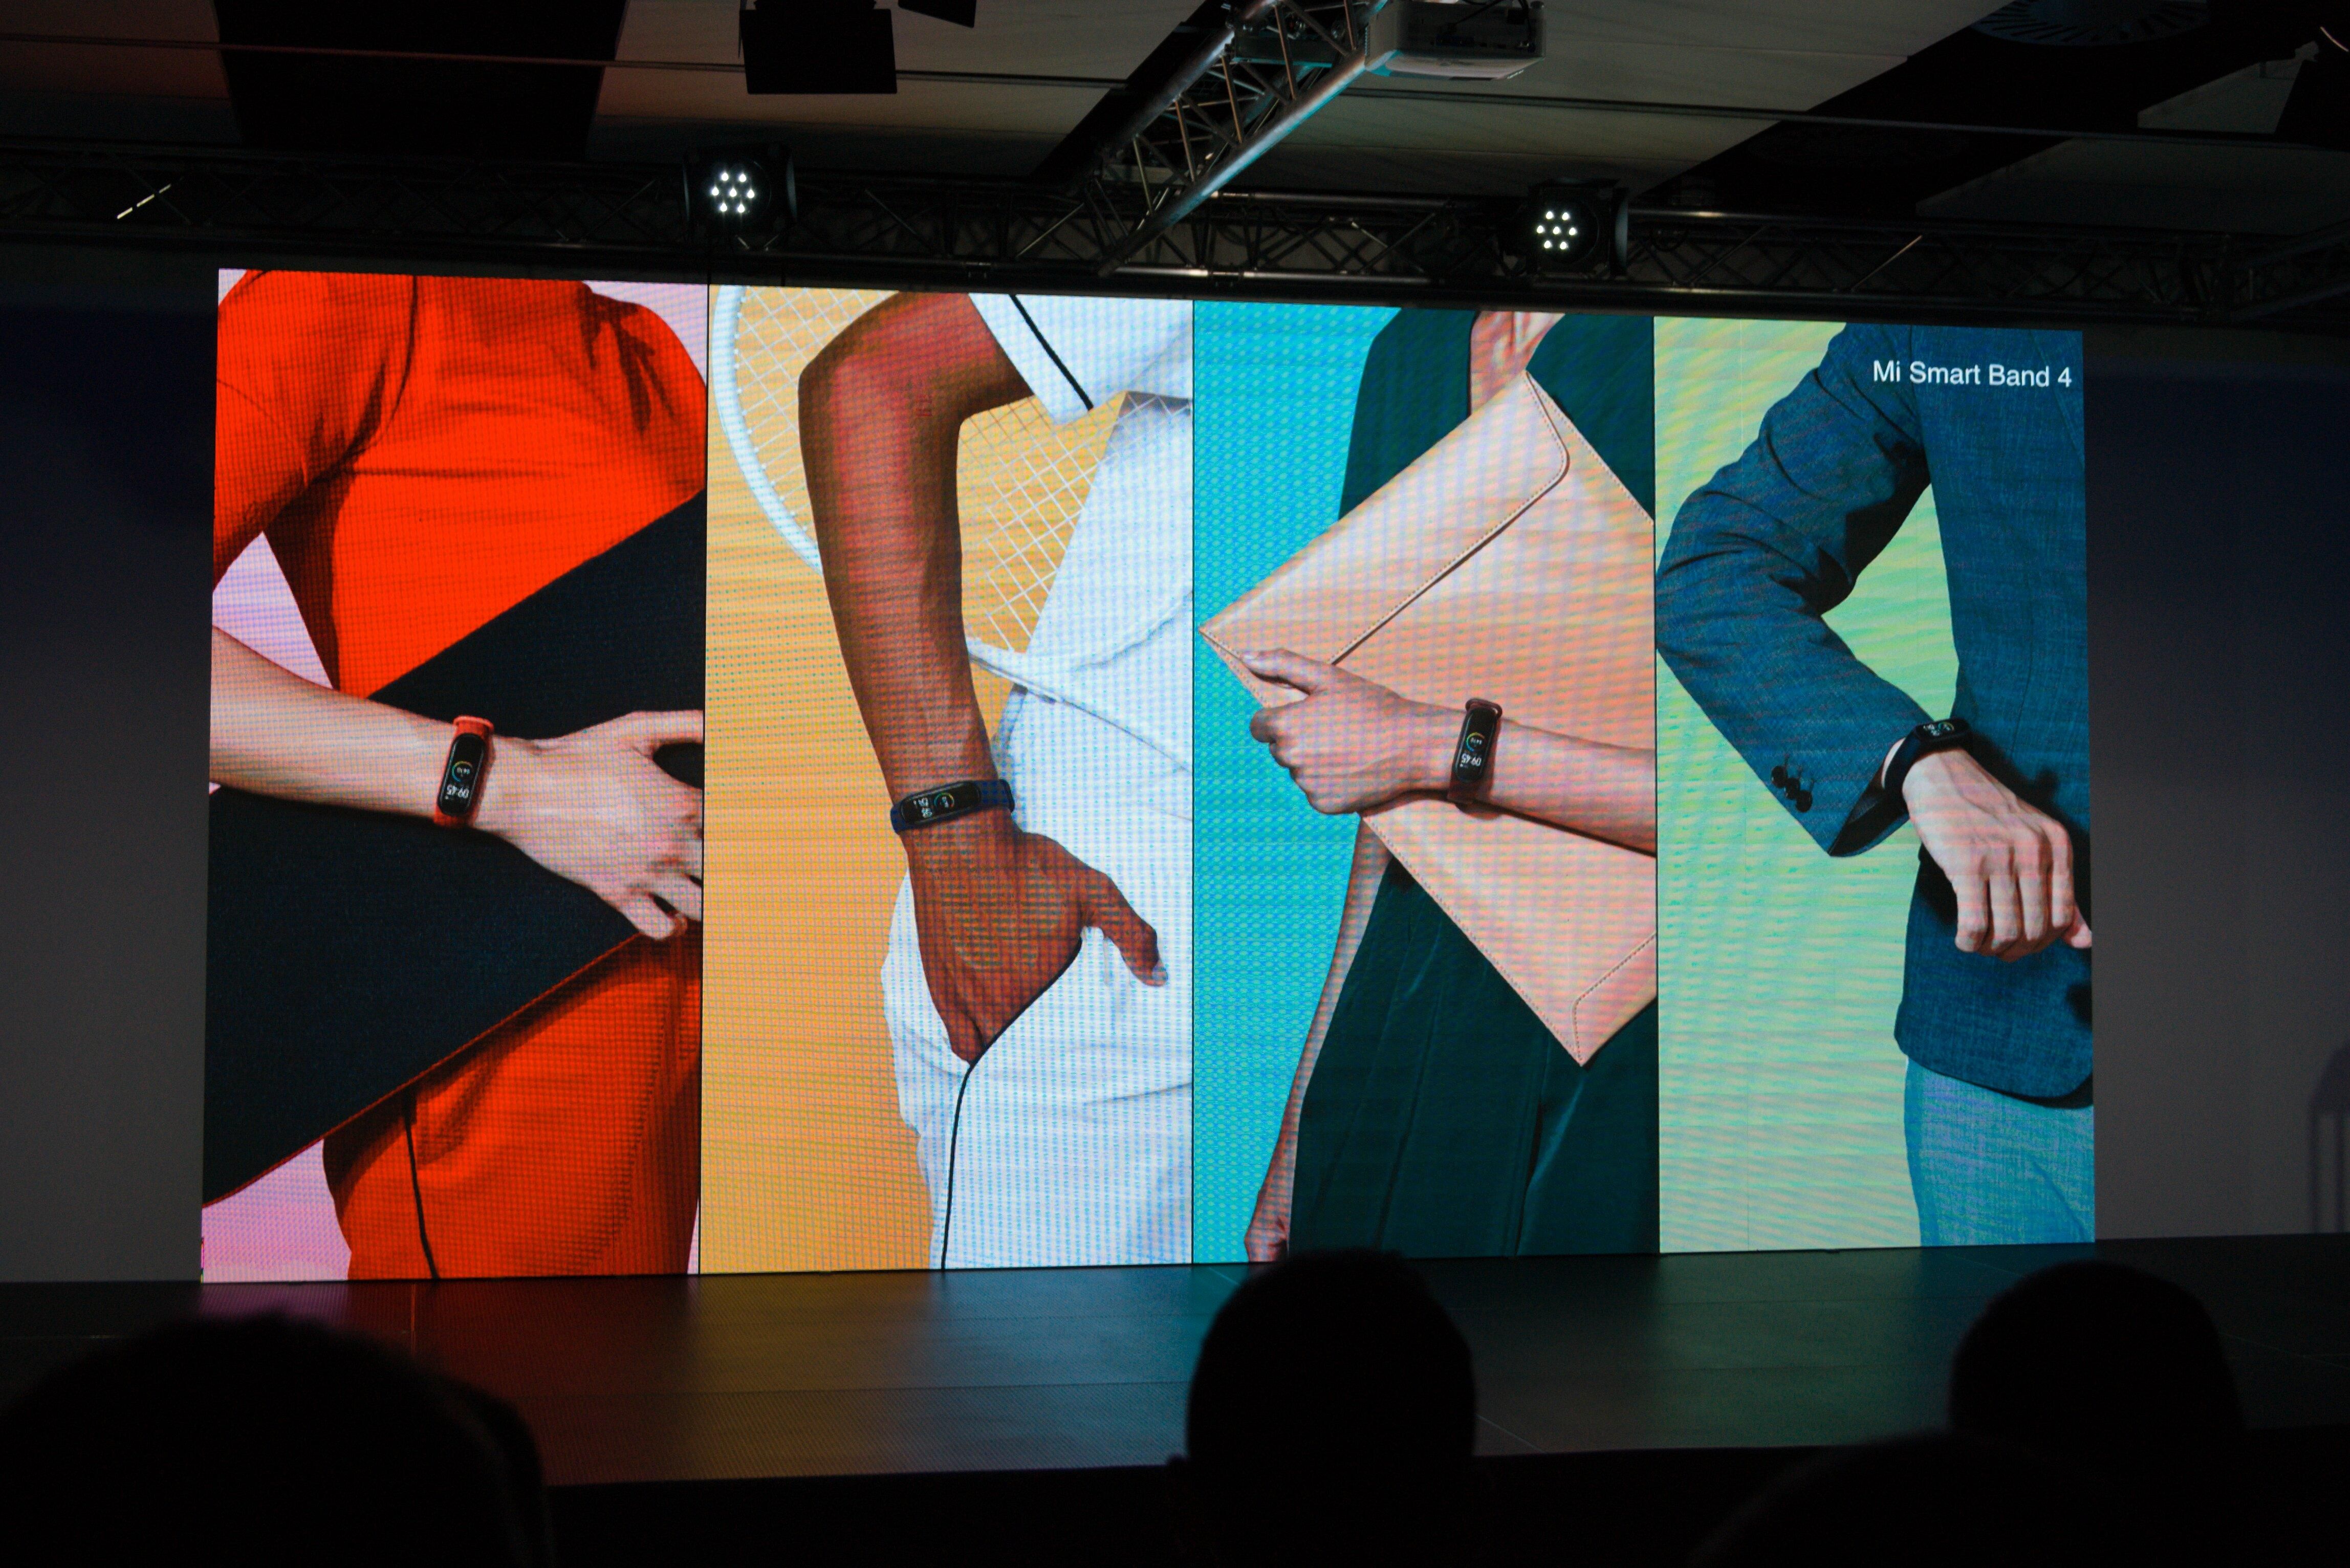 Официальная презентация Xiaomi Mi Band 4: характеристики и цена фитнес-трекера